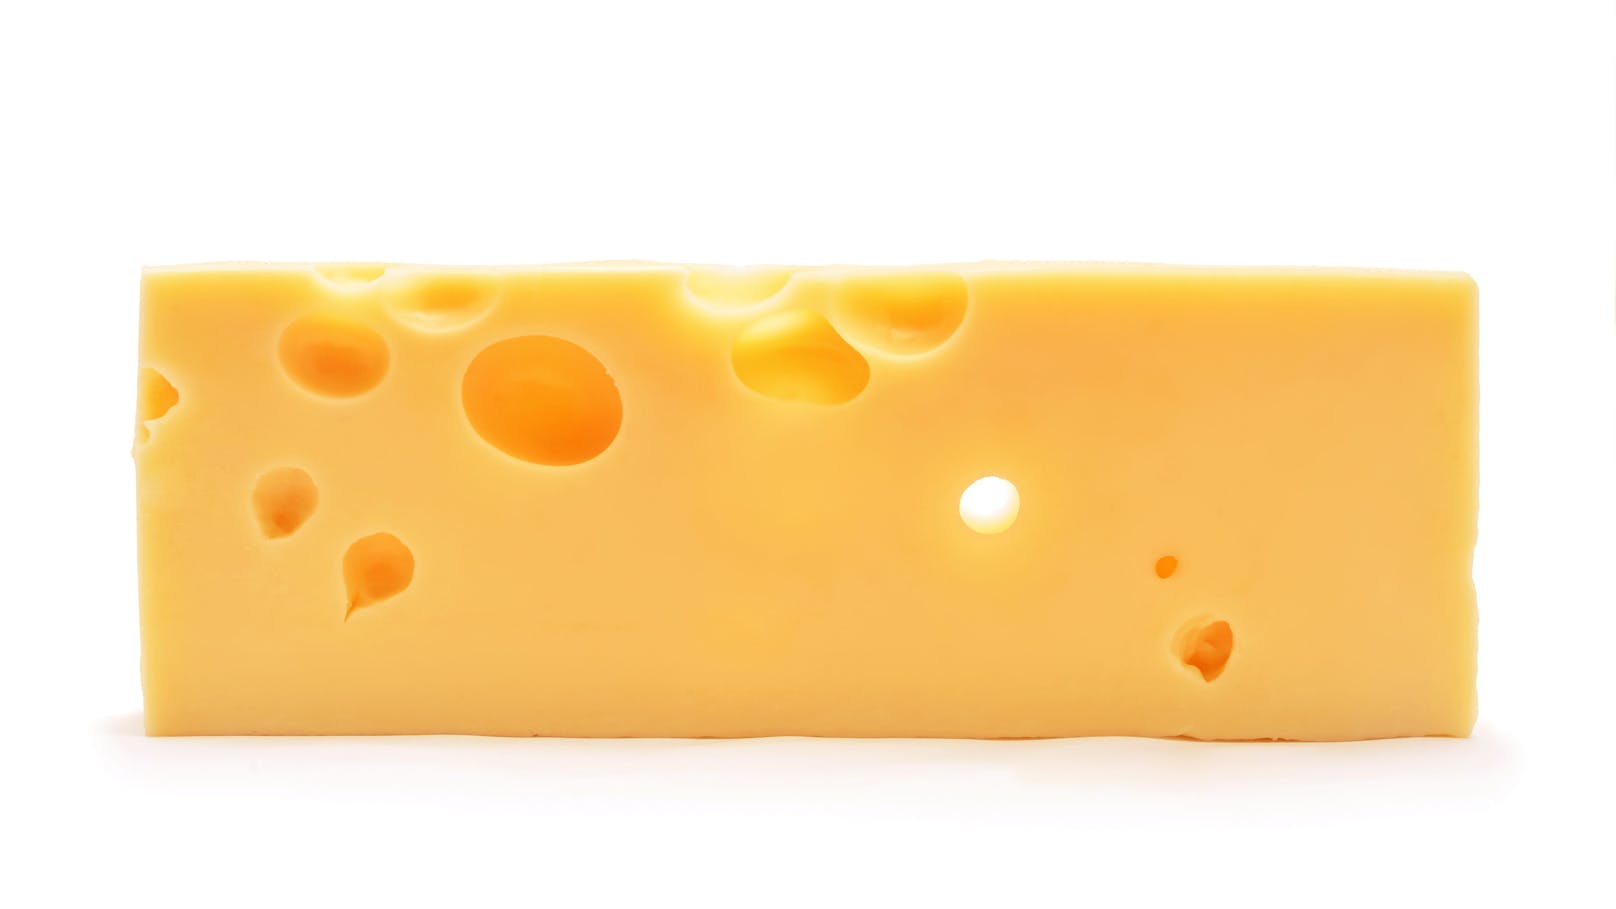 <strong>3. Natriumreduzierter Käse!&nbsp;</strong>Bei dieser Käsesorte wird Natrium (Kochsalz) in einem aufwendigen Verfahren größtenteils aus dem Käse entfernt. Fehlen jedoch bestimmte Bestandteile, dann müssen diese ersetzt werden, um ein fertiges Produkt herzustellen. Daher wird Natrium durch andere künstliche Zusatzstoffe ersetzt. Diese können zu Verstopfungen der Blutgefäße führen.